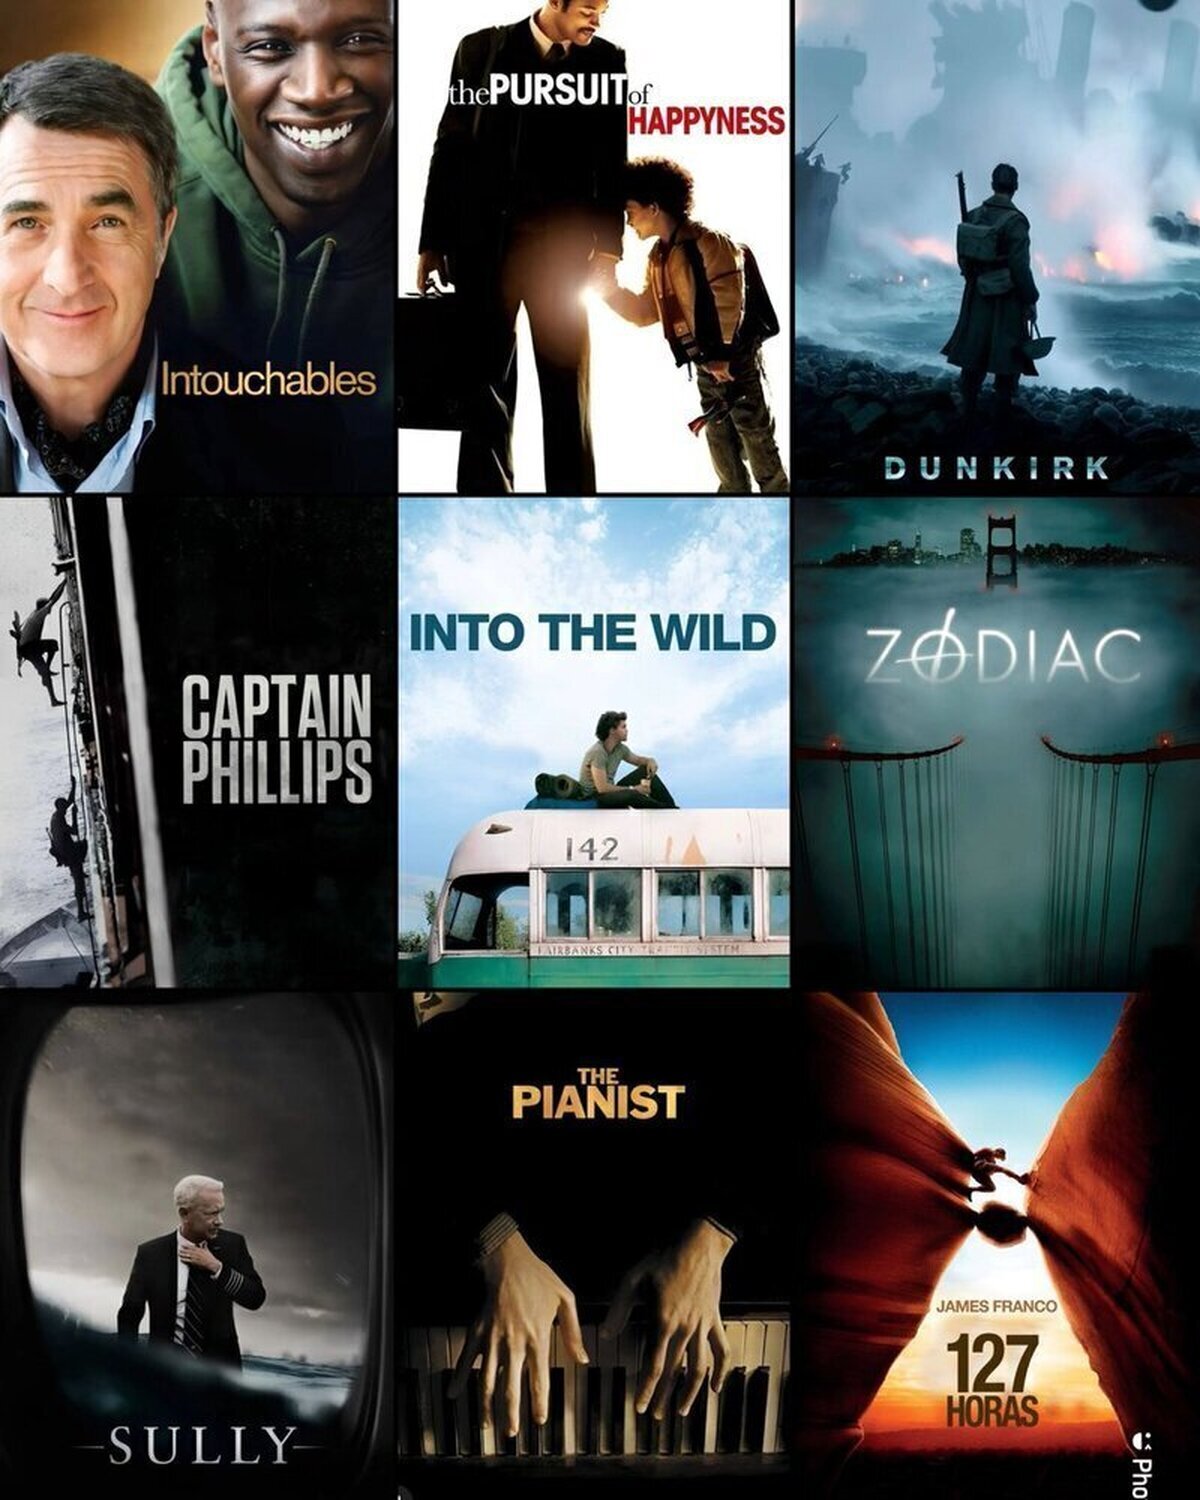 9 increíbles películas basadas en hechos reales.¿Cual de ellas te gusta más?  